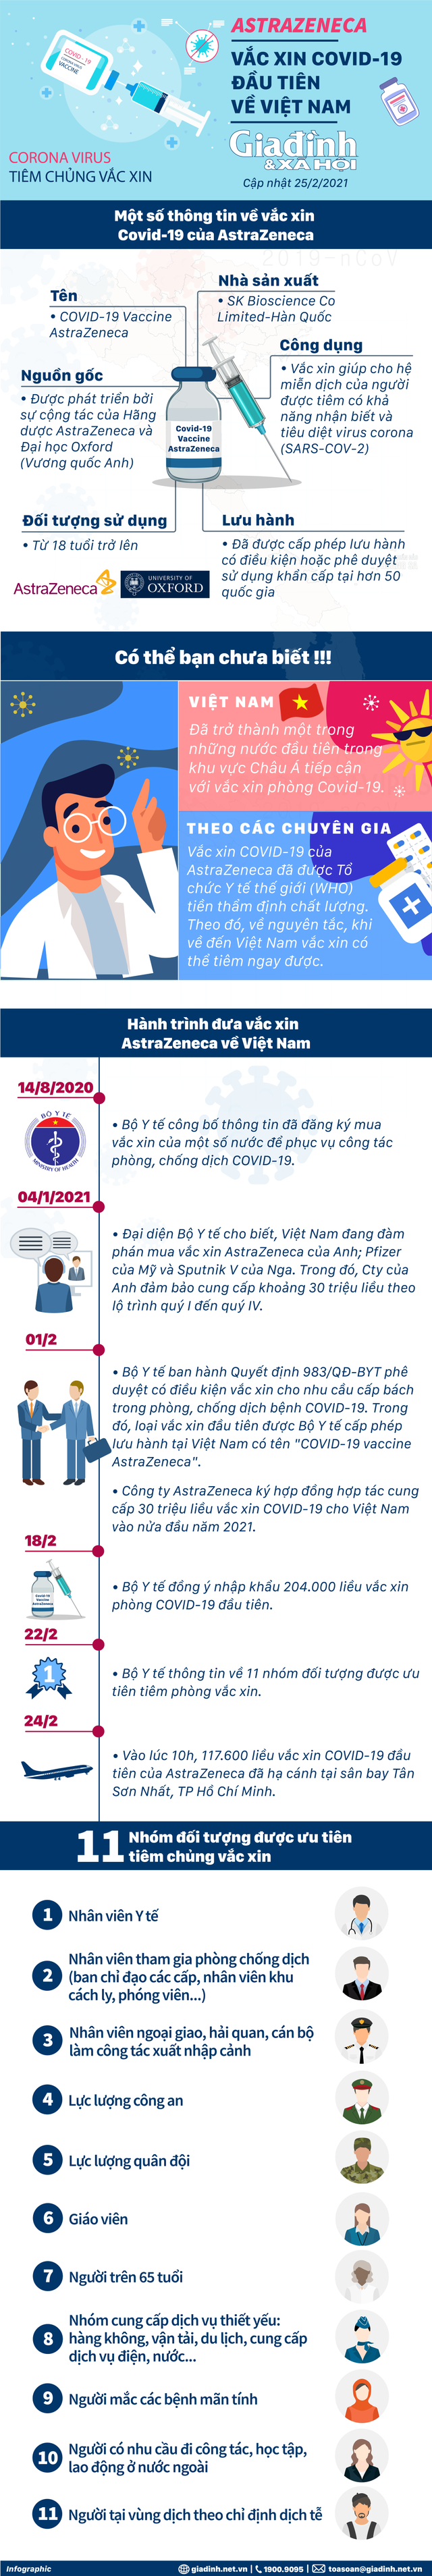 [Infographic] - Những điều chưa biết về lô vaccine COVID-19 đầu tiên tại Việt Nam - Ảnh 1.